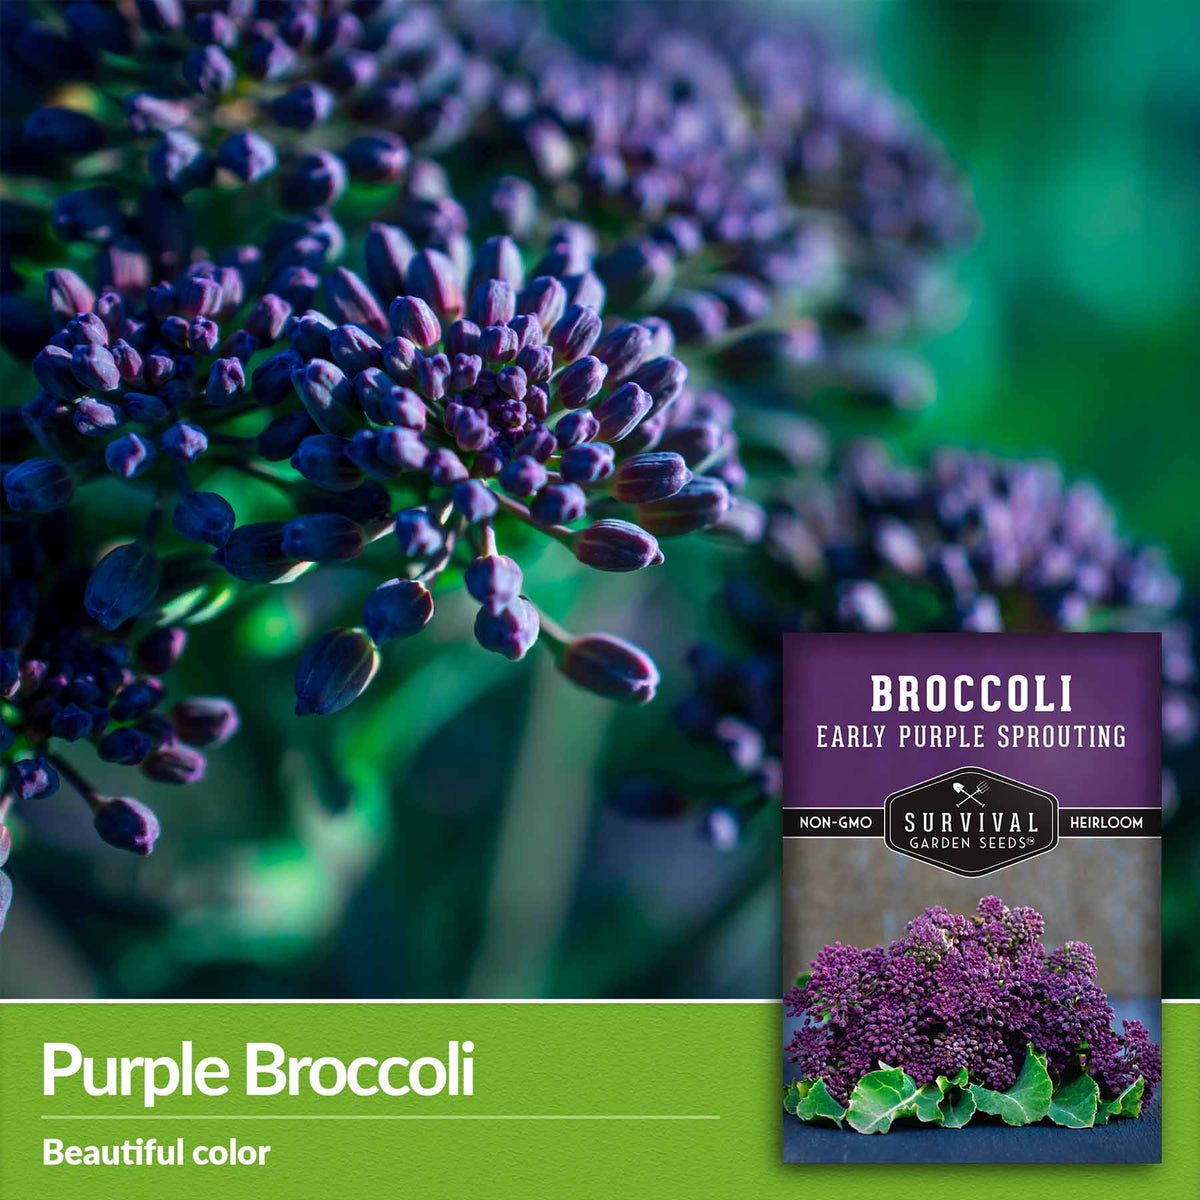 Purple Broccoli - beautiful color